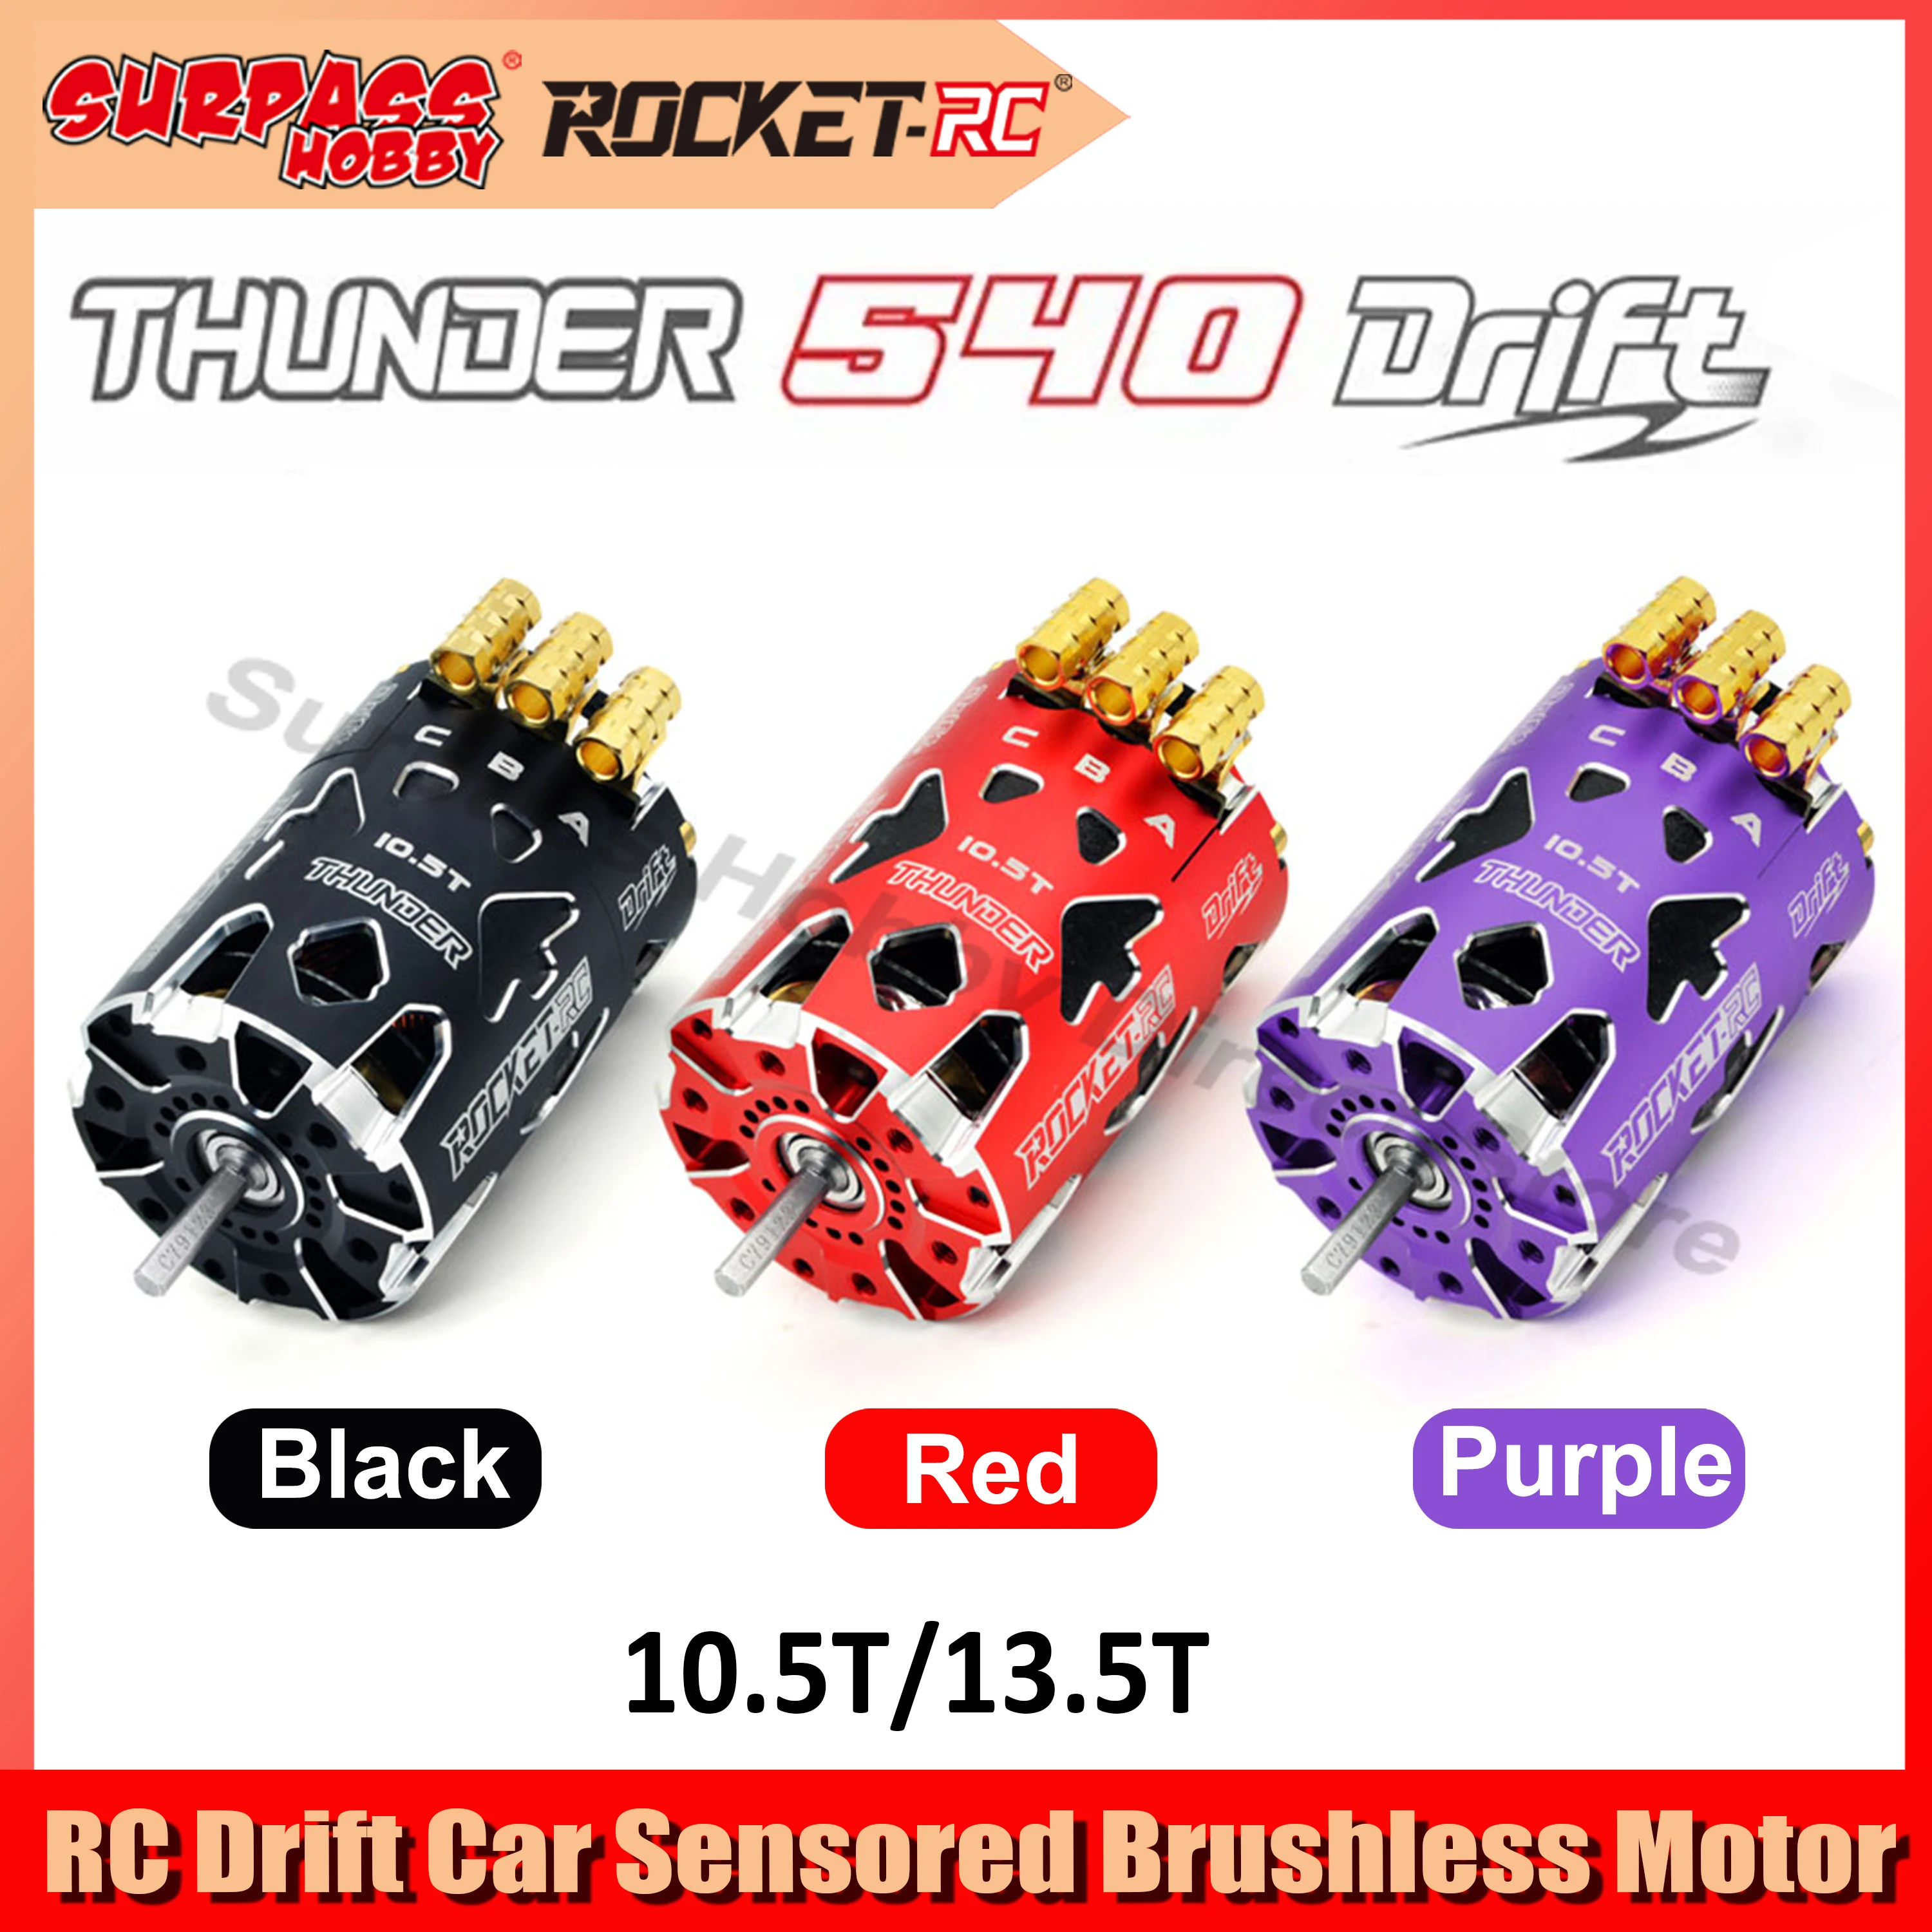 

Surpass Hobby Rocket Thunder 540 10.5T 13.5T Sensored Brushless Motor for 1/10 RC Drift Car Competition Racing Yokomo MST 3650